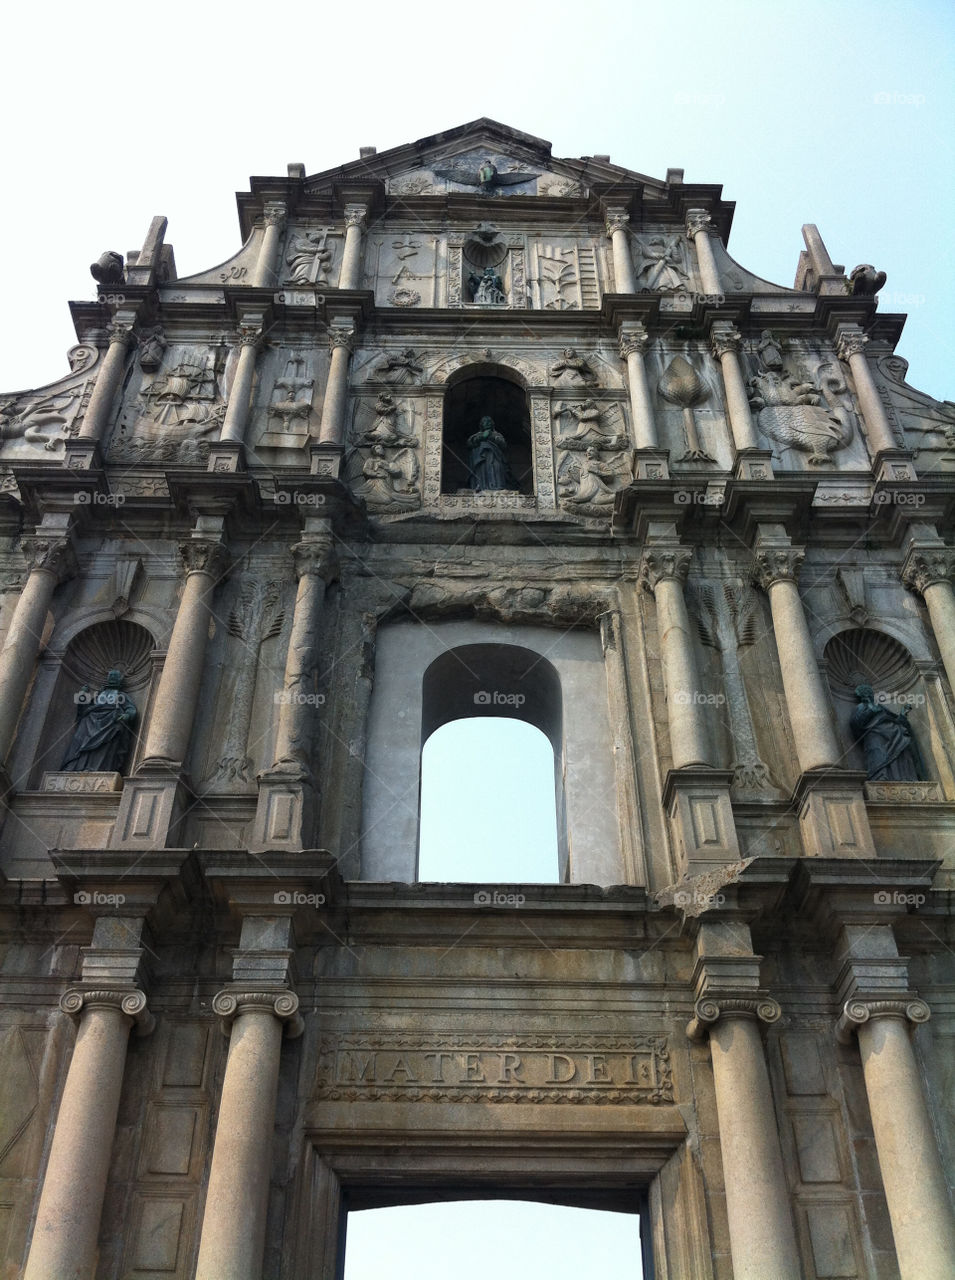 The ruins of St. Paul in Macau.